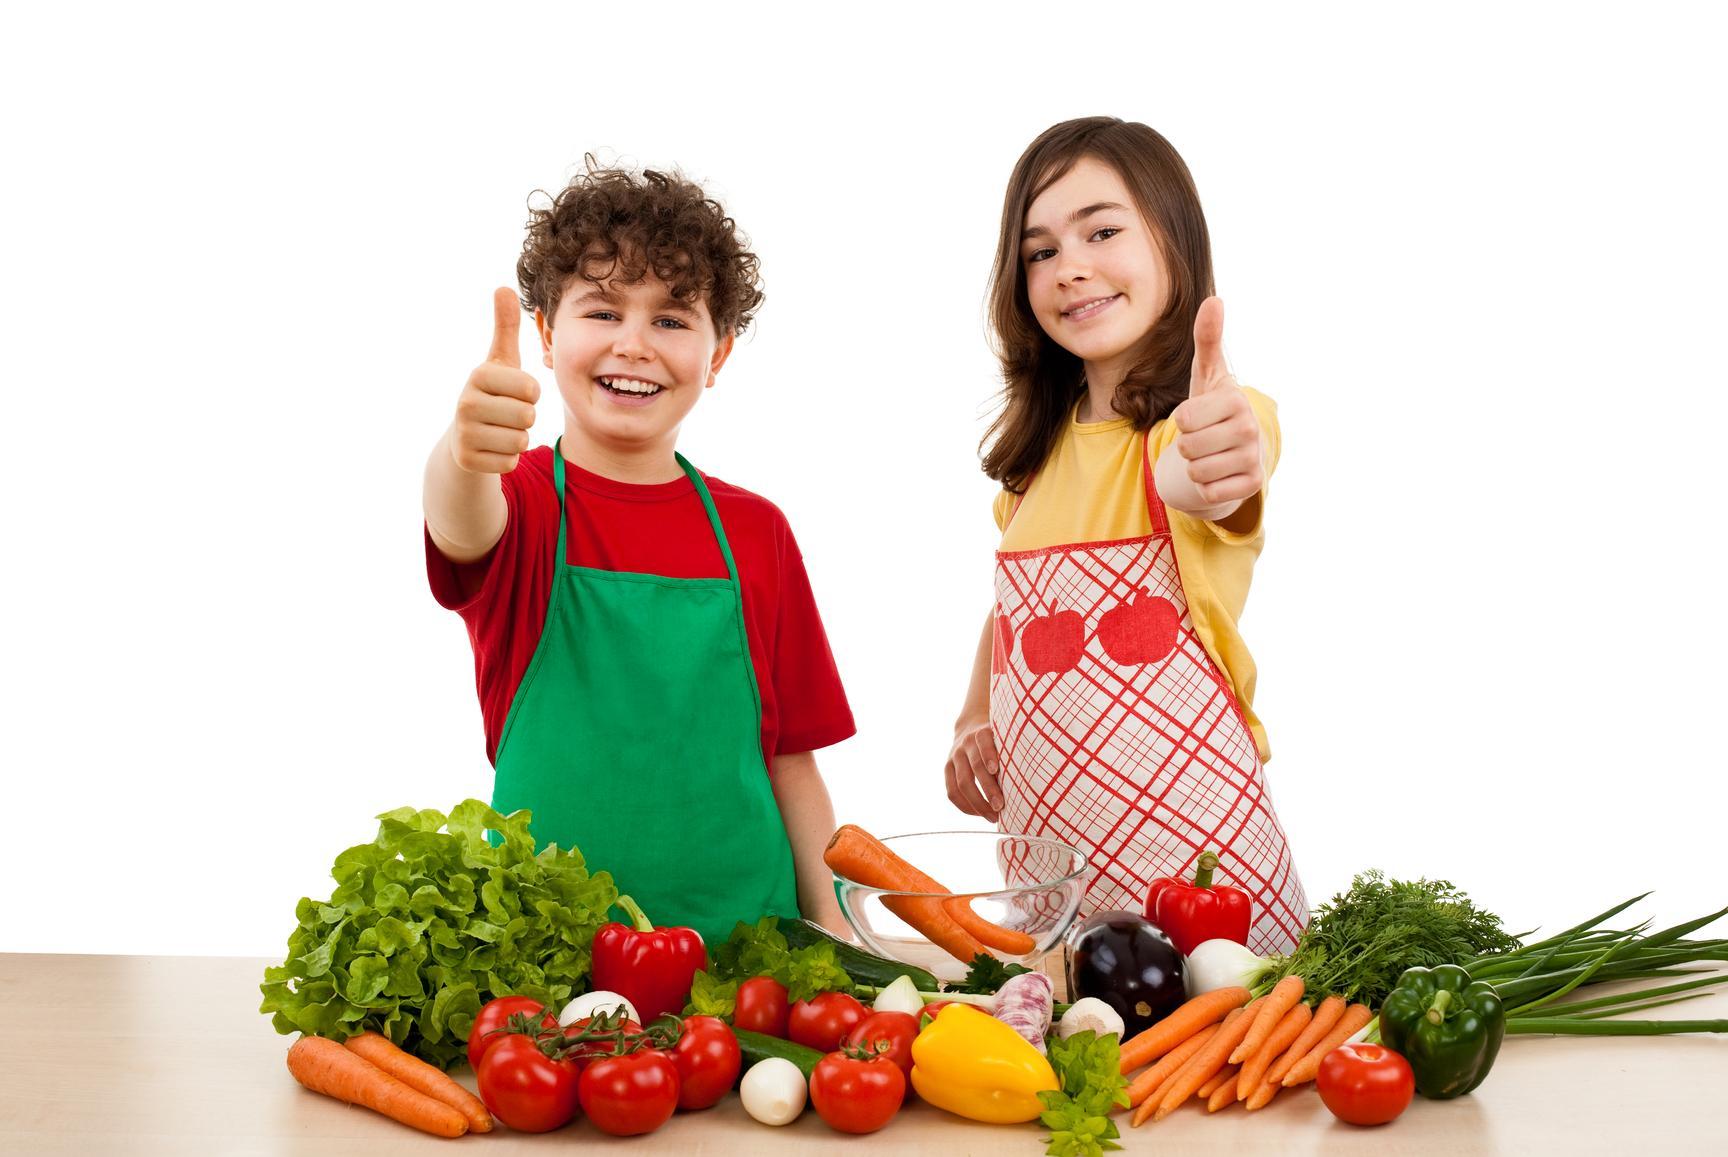 Разная культура питания. Здоровое питание. Правильное и здоровое питание. Здоровое питание для детей. Правильное питание для детей школьного возраста.